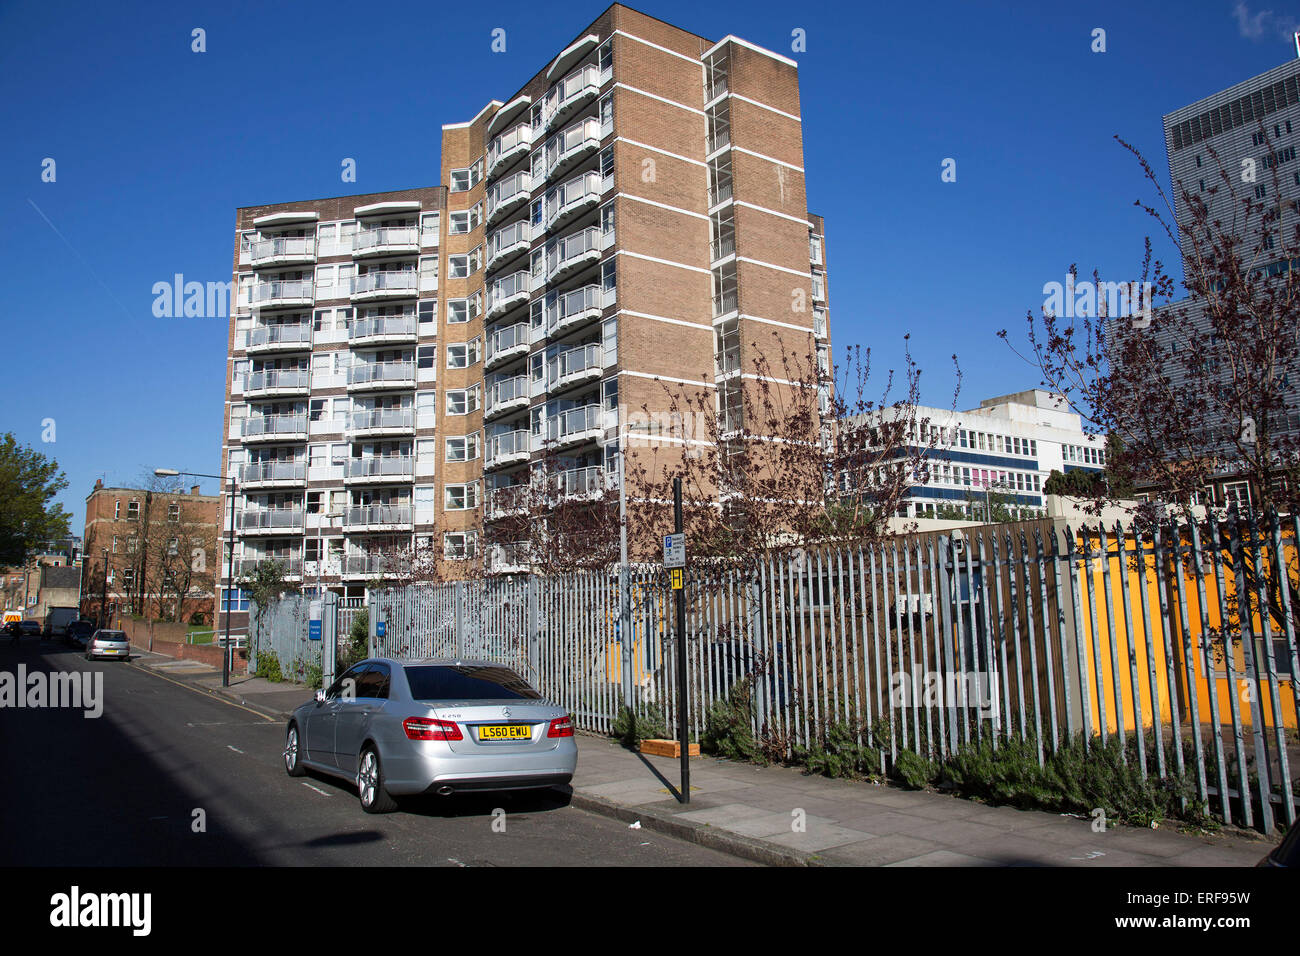 Complesso residenziale a Whitechapel, East London, Regno Unito. Consiglio estates come questo sono molto comuni in tutto Tower Hamlets, che è il più popoloso quartiere nel Regno Unito. Foto Stock